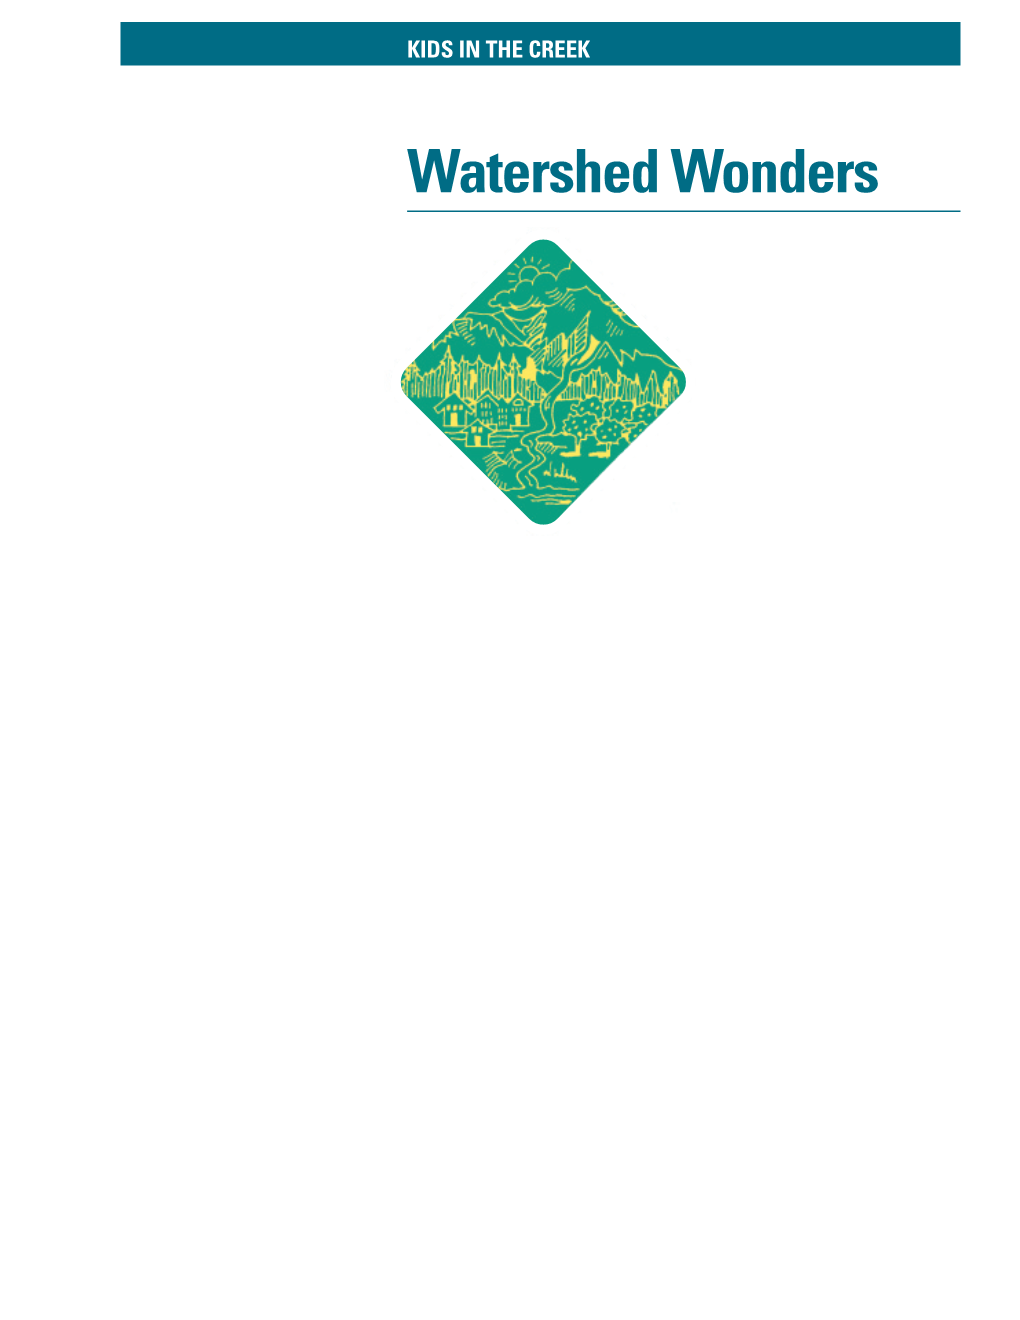 Watershed Wonders 188 WATERSHED WONDERS